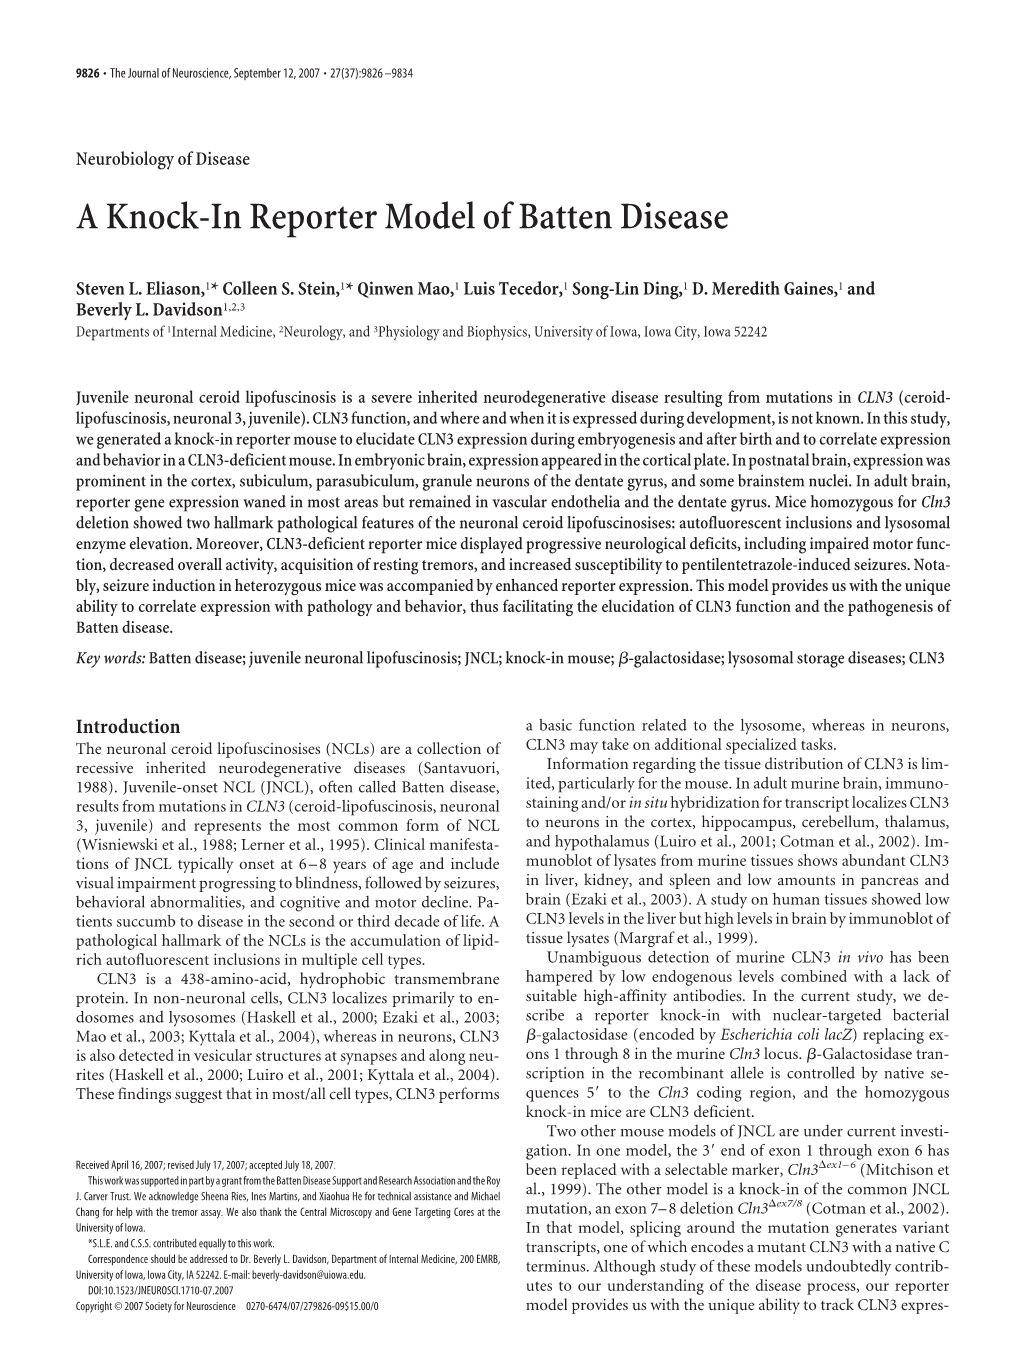 A Knock-In Reporter Model of Batten Disease